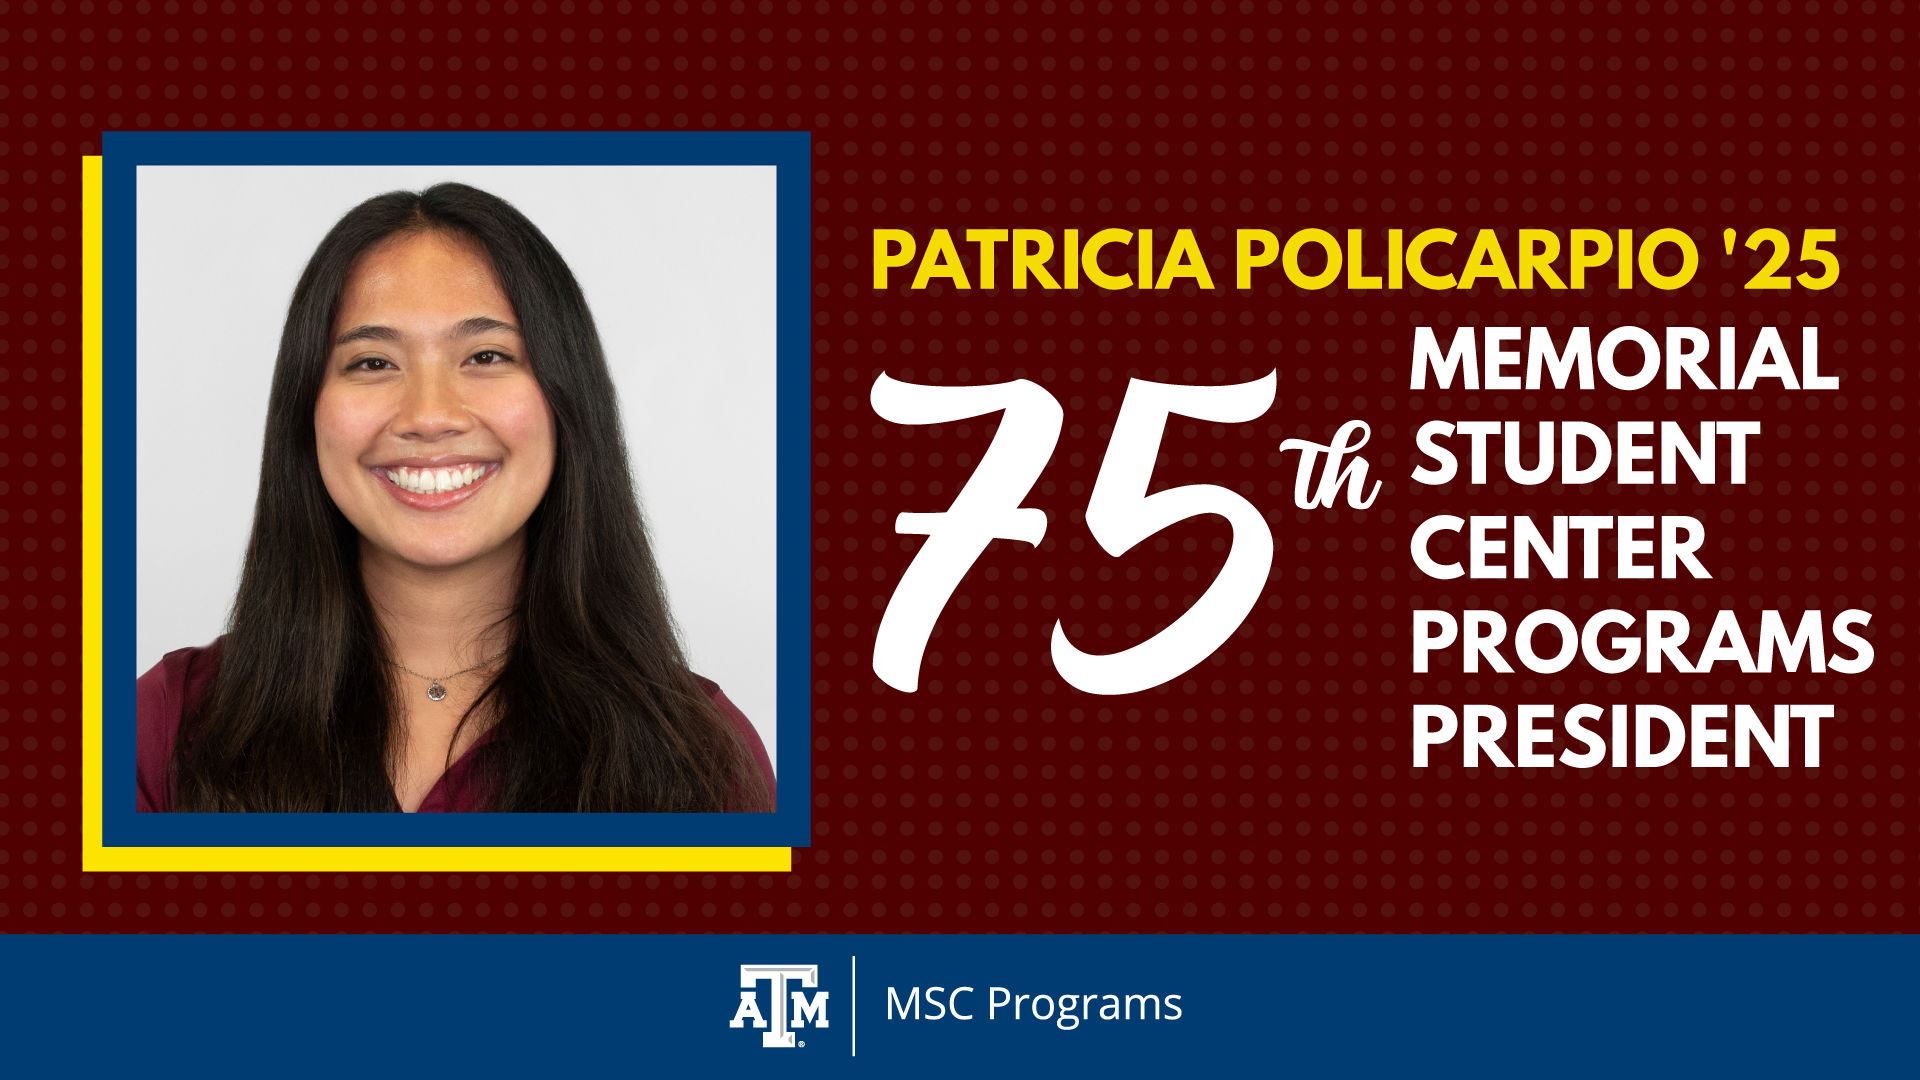 Patricia Policarpio '25 named 75th MSC Programs President.